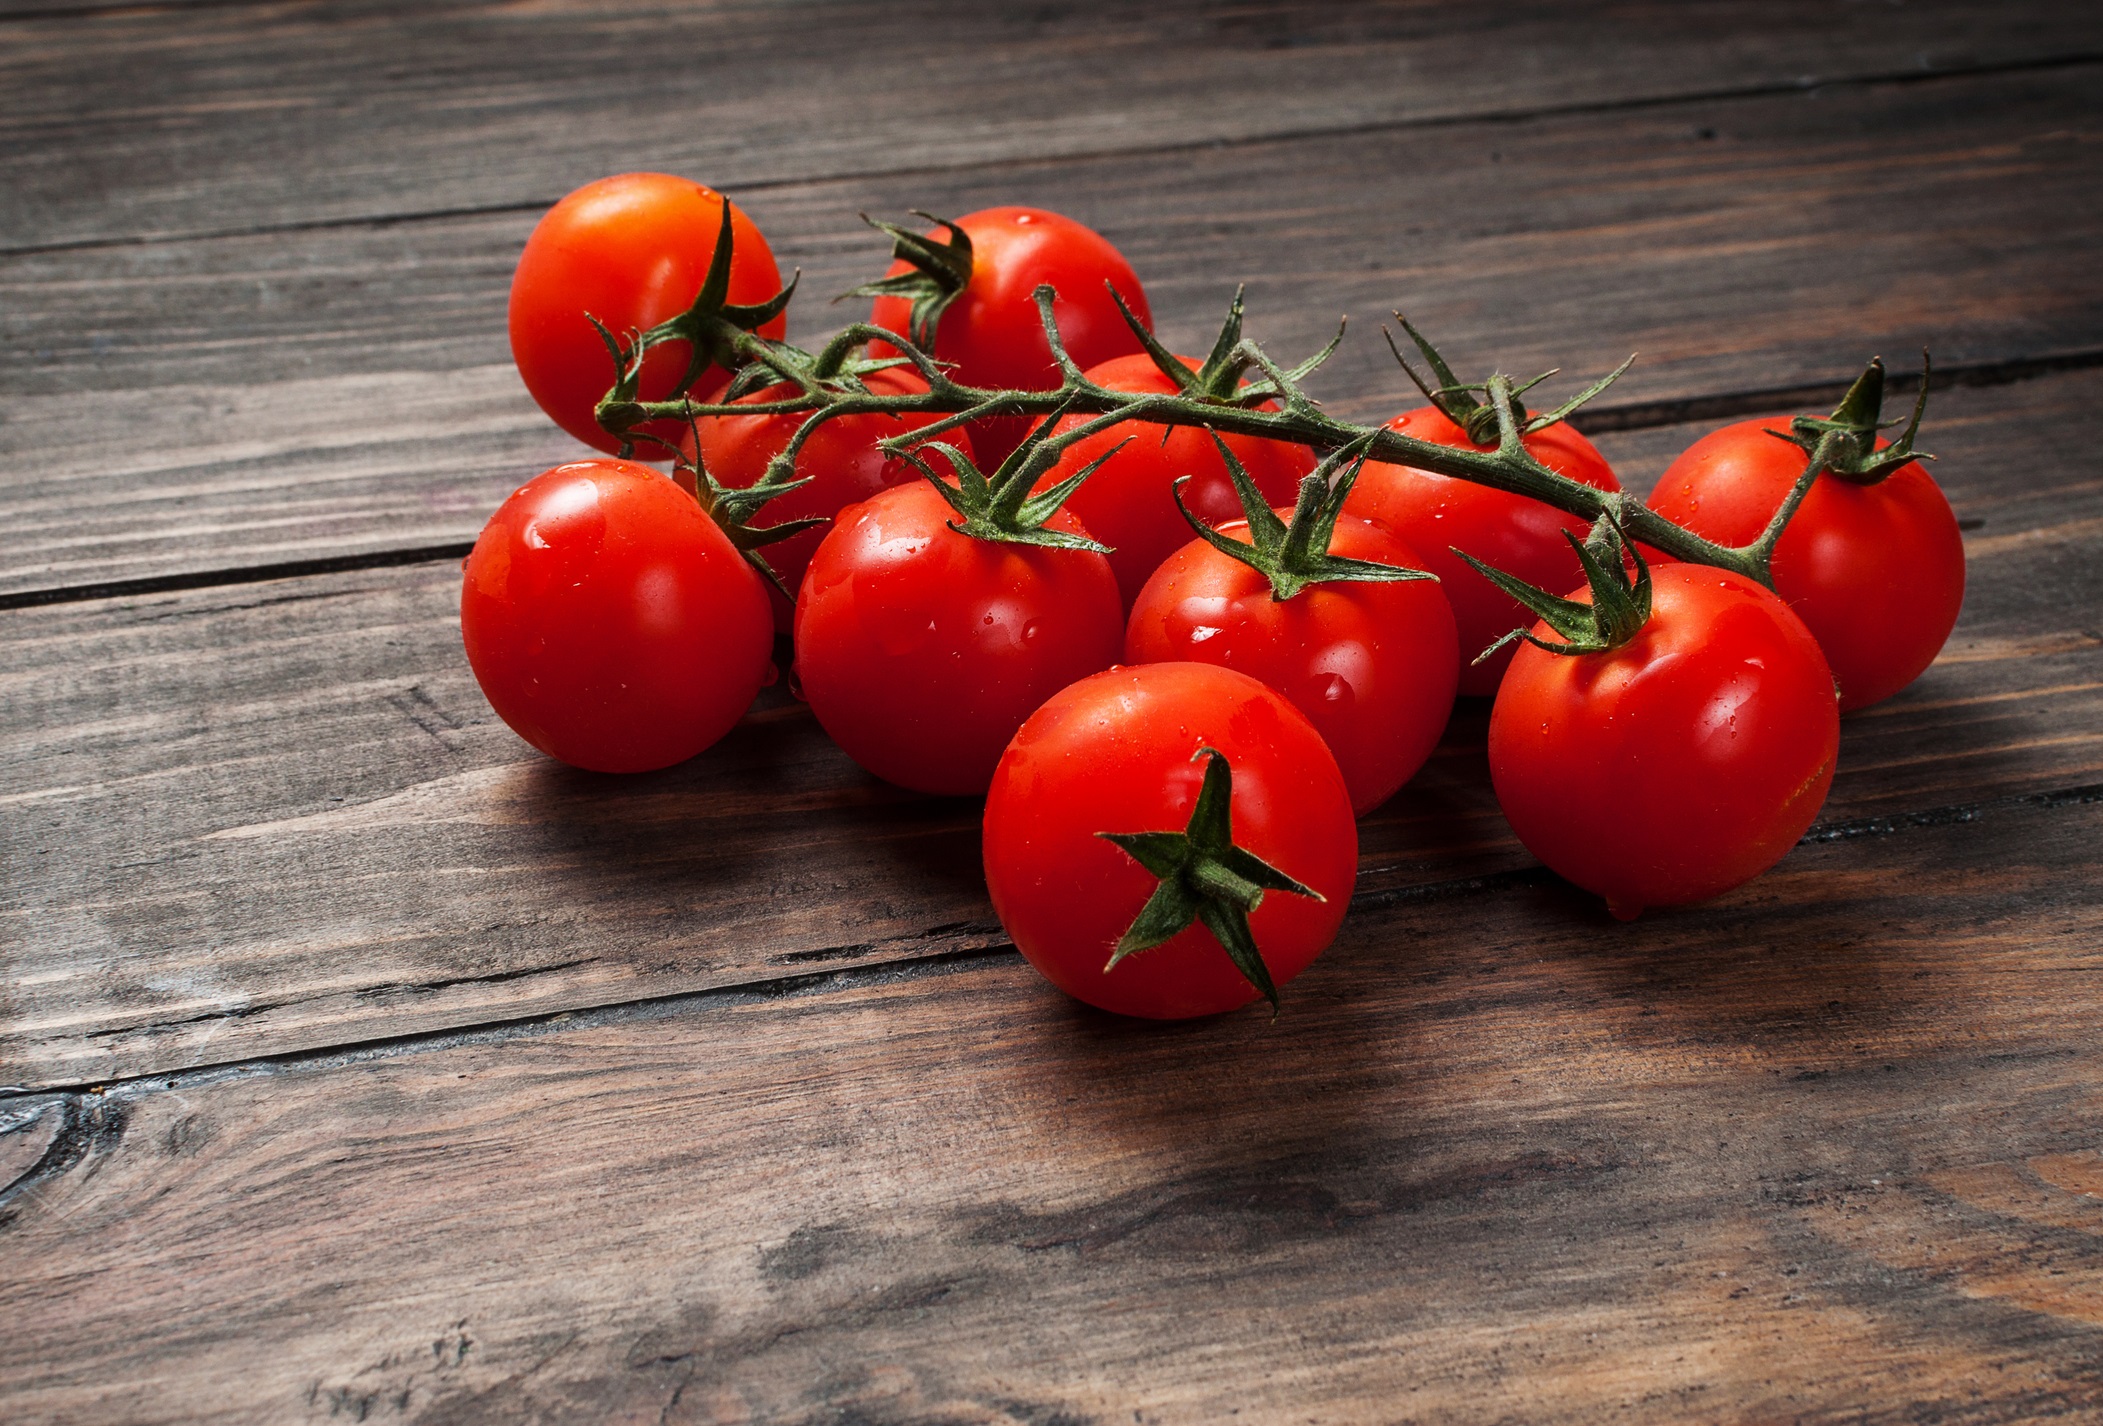 <p><strong>Домати</strong></p>

<p>Високото съдържание на вода и изобилие от витамини прави доматите основен полезен продукт. Това, което наистина ги кара да блестят, е техният ликопен &ndash; силен антиоксидант, който неутрализира свободните радикали, които състаряват кожата и причиняват бръчки.</p>